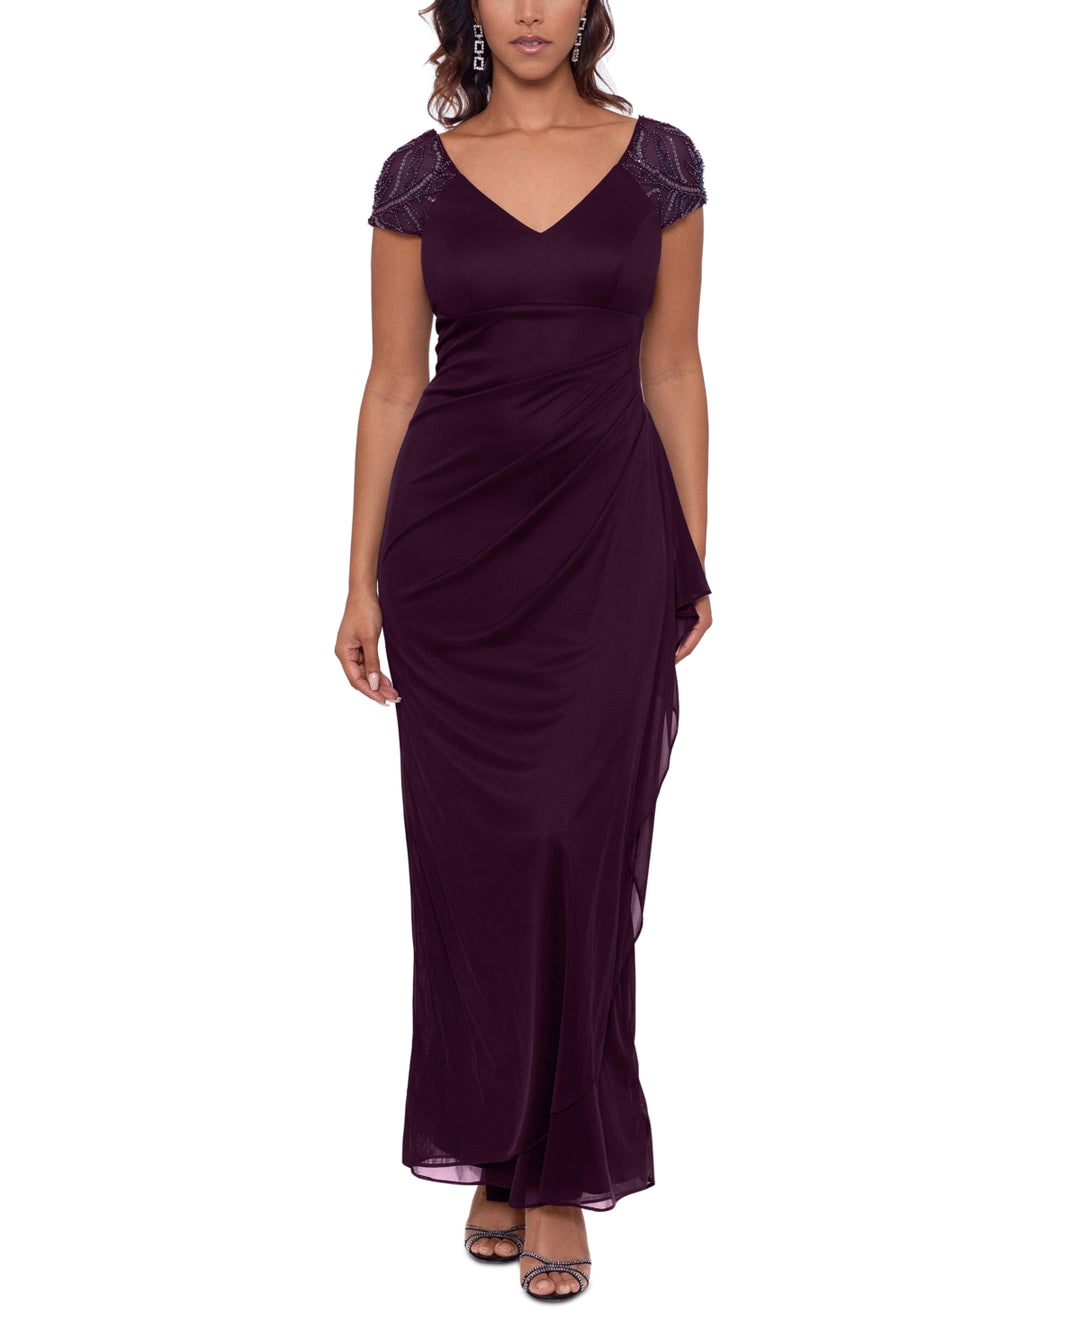 XSCAPE Women's Embellished Sleeve Gown Purple Size 6